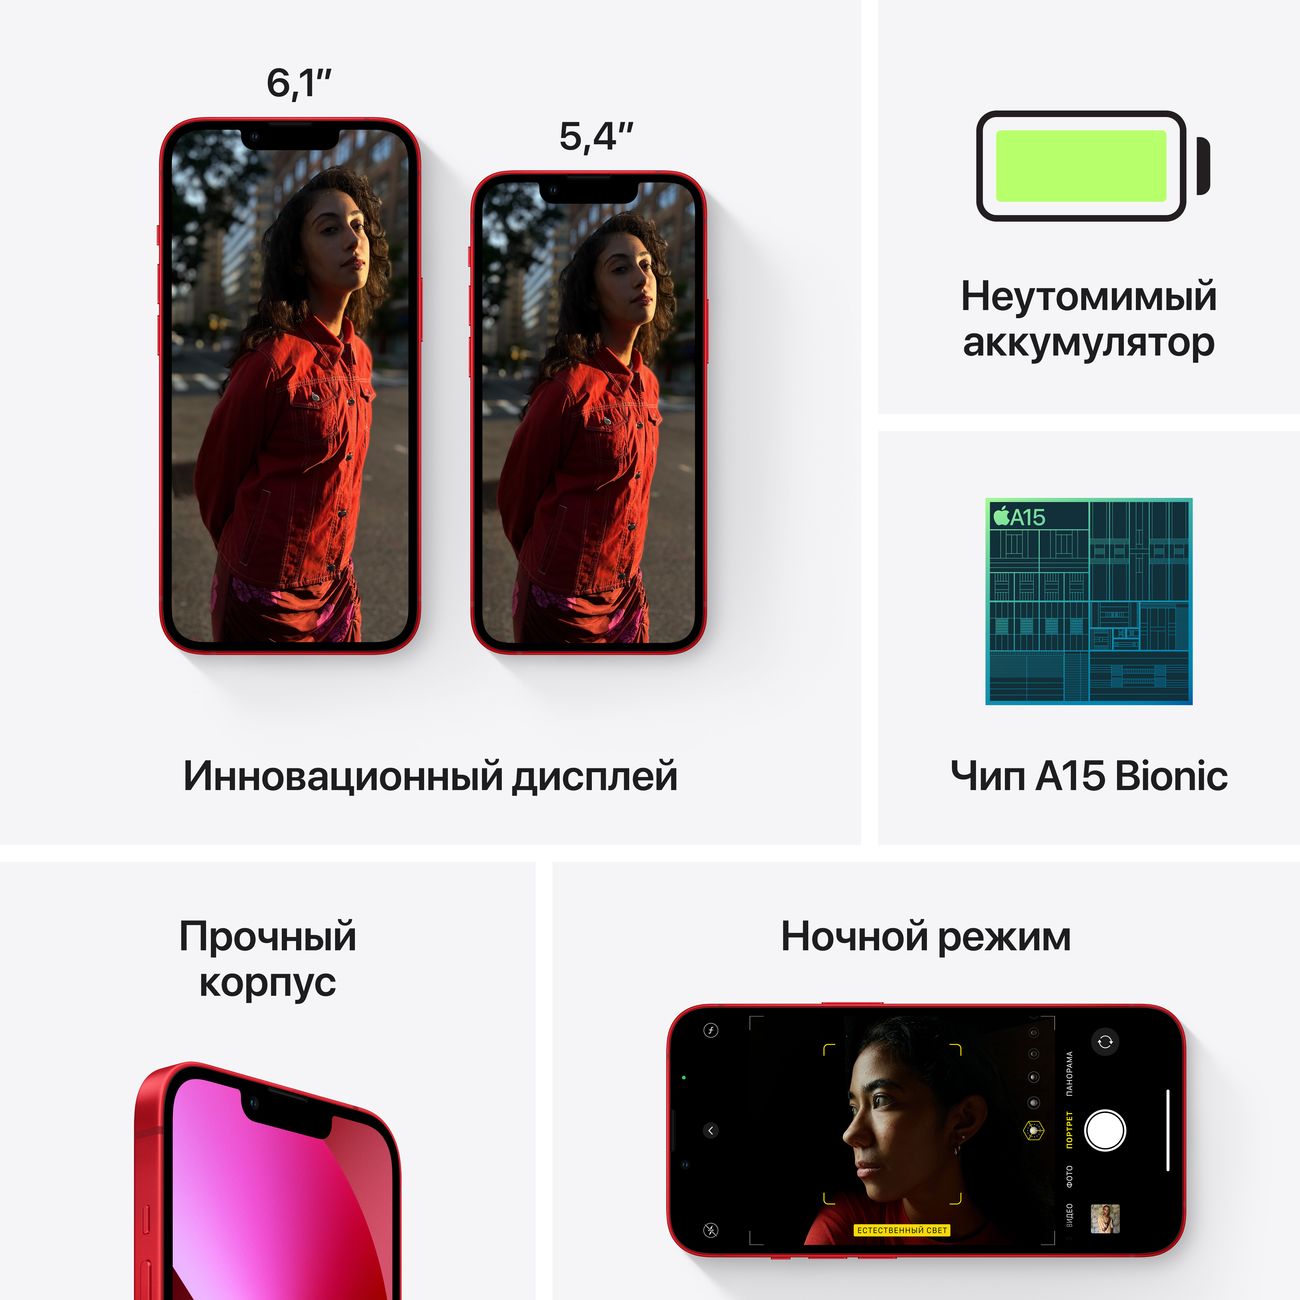 Купить смартфон apple iphone 13 mini 128gb midnight Apple iPhone 13 mini в официальном магазине Apple, Samsung, Xiaomi. iPixel.ru Купить, заказ, кредит, рассрочка, отзывы,  характеристики, цена,  фотографии, в подарок.